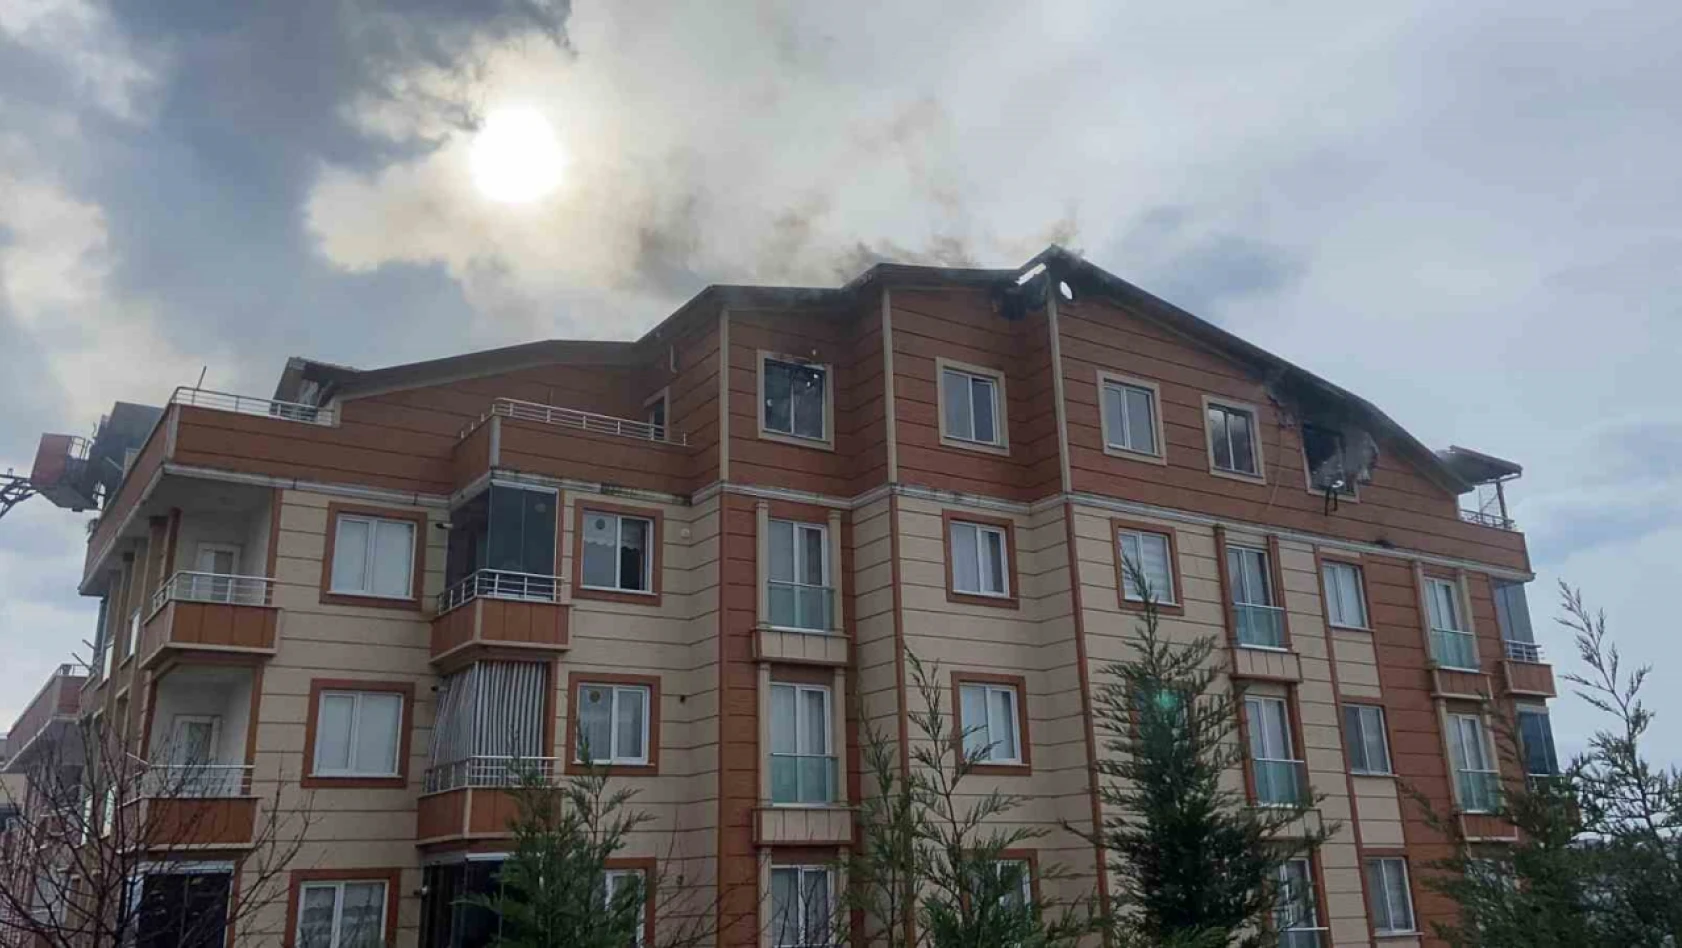 Dubleks daire alev alev yandı, bina tahliye edildi